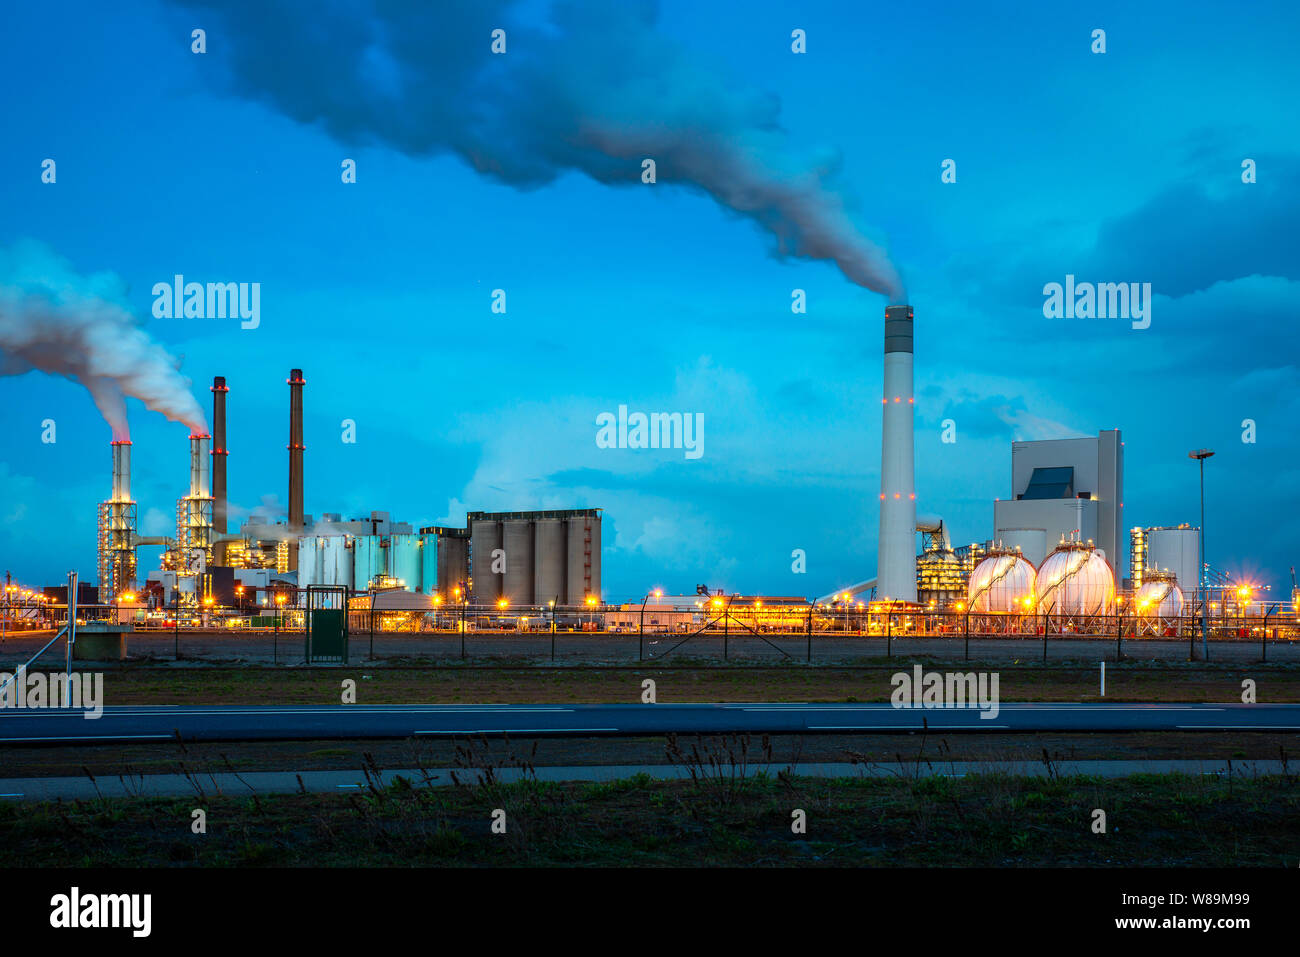 Ölraffinerie Industrie in der Nacht in Rotterdam, Niederlande. Die Verschmutzung von Rauch aus Ölraffinerie Industrie Nutzen für Umwelt Industrie Konzept. Stockfoto